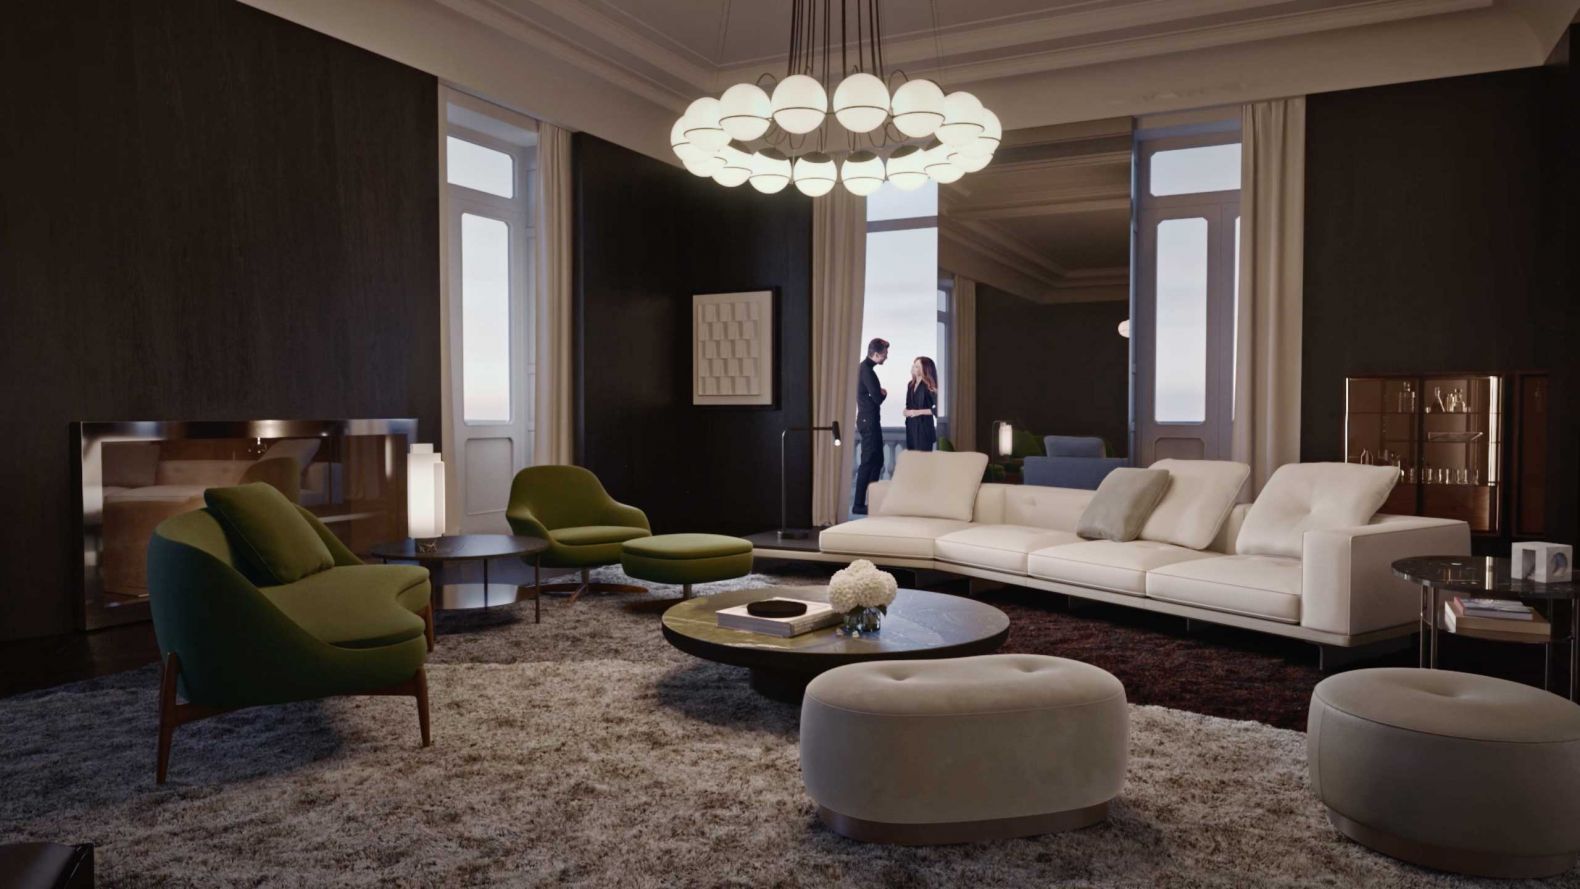 Die Designmöbel von Minotti sprechen eine universelle Sprache, die zu allen Innenräumen und Lebensweisen passt.